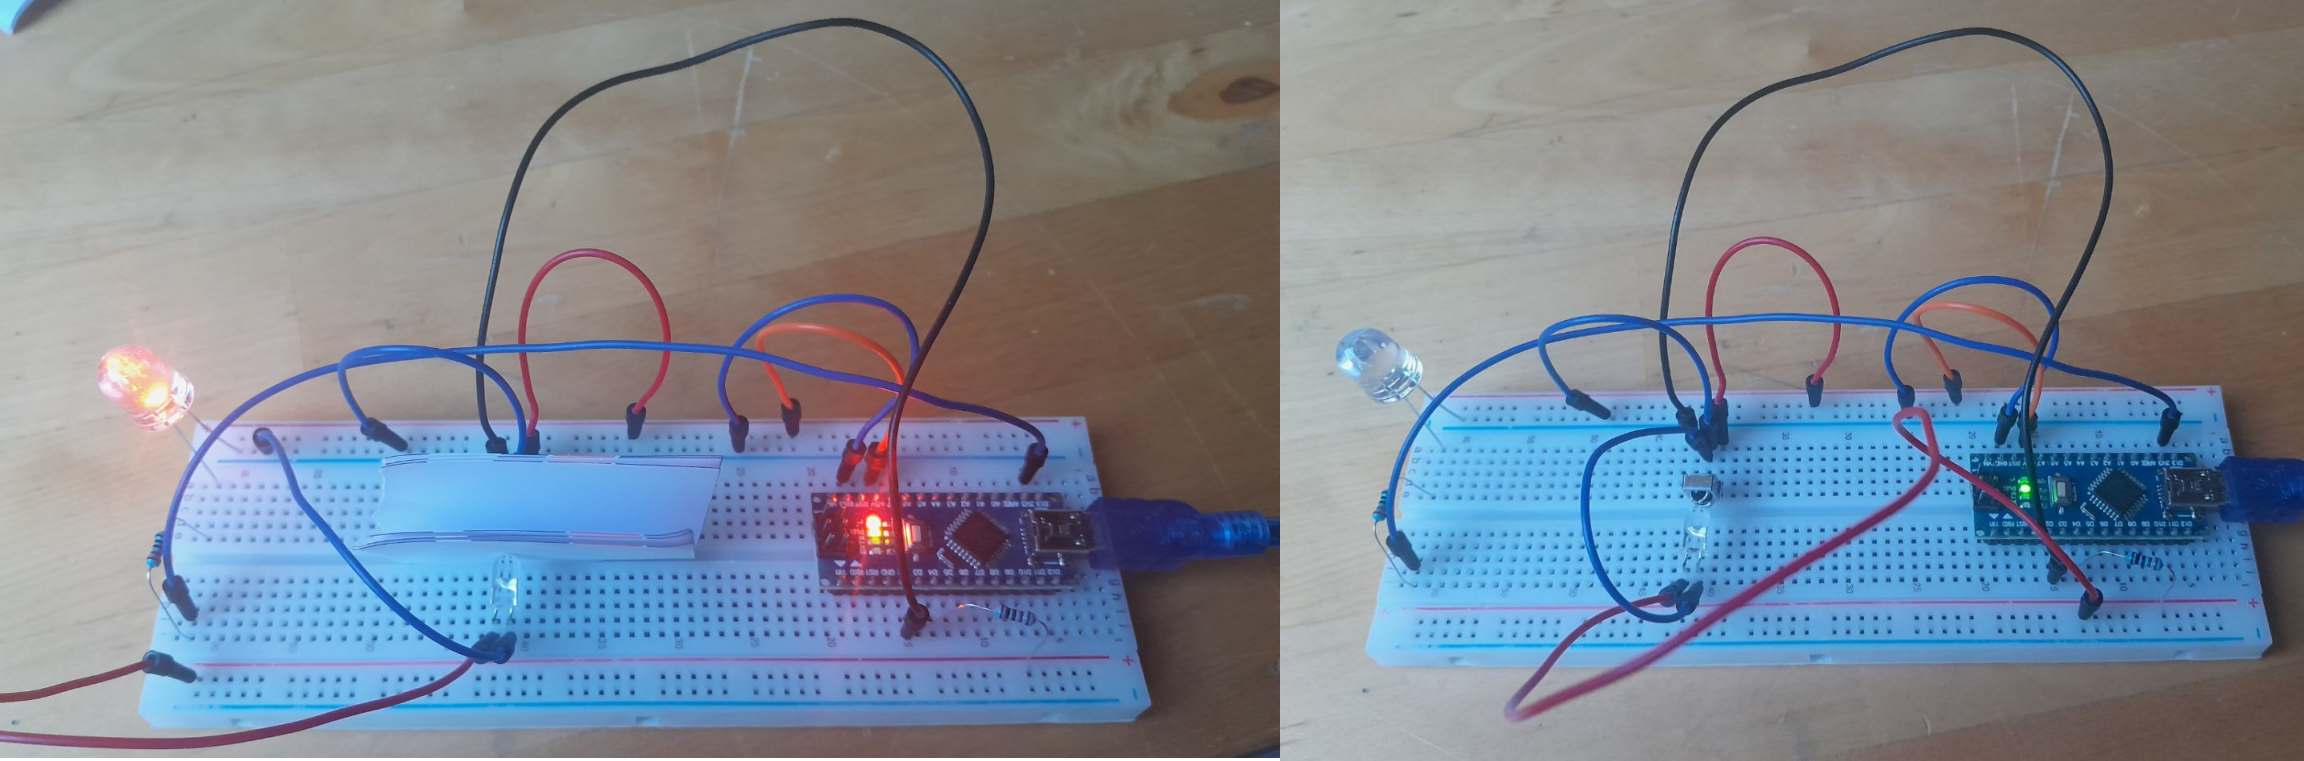 Arduino Lichtschranke mit VS 1838 IR Empfänger und IR LED Tutorial 4